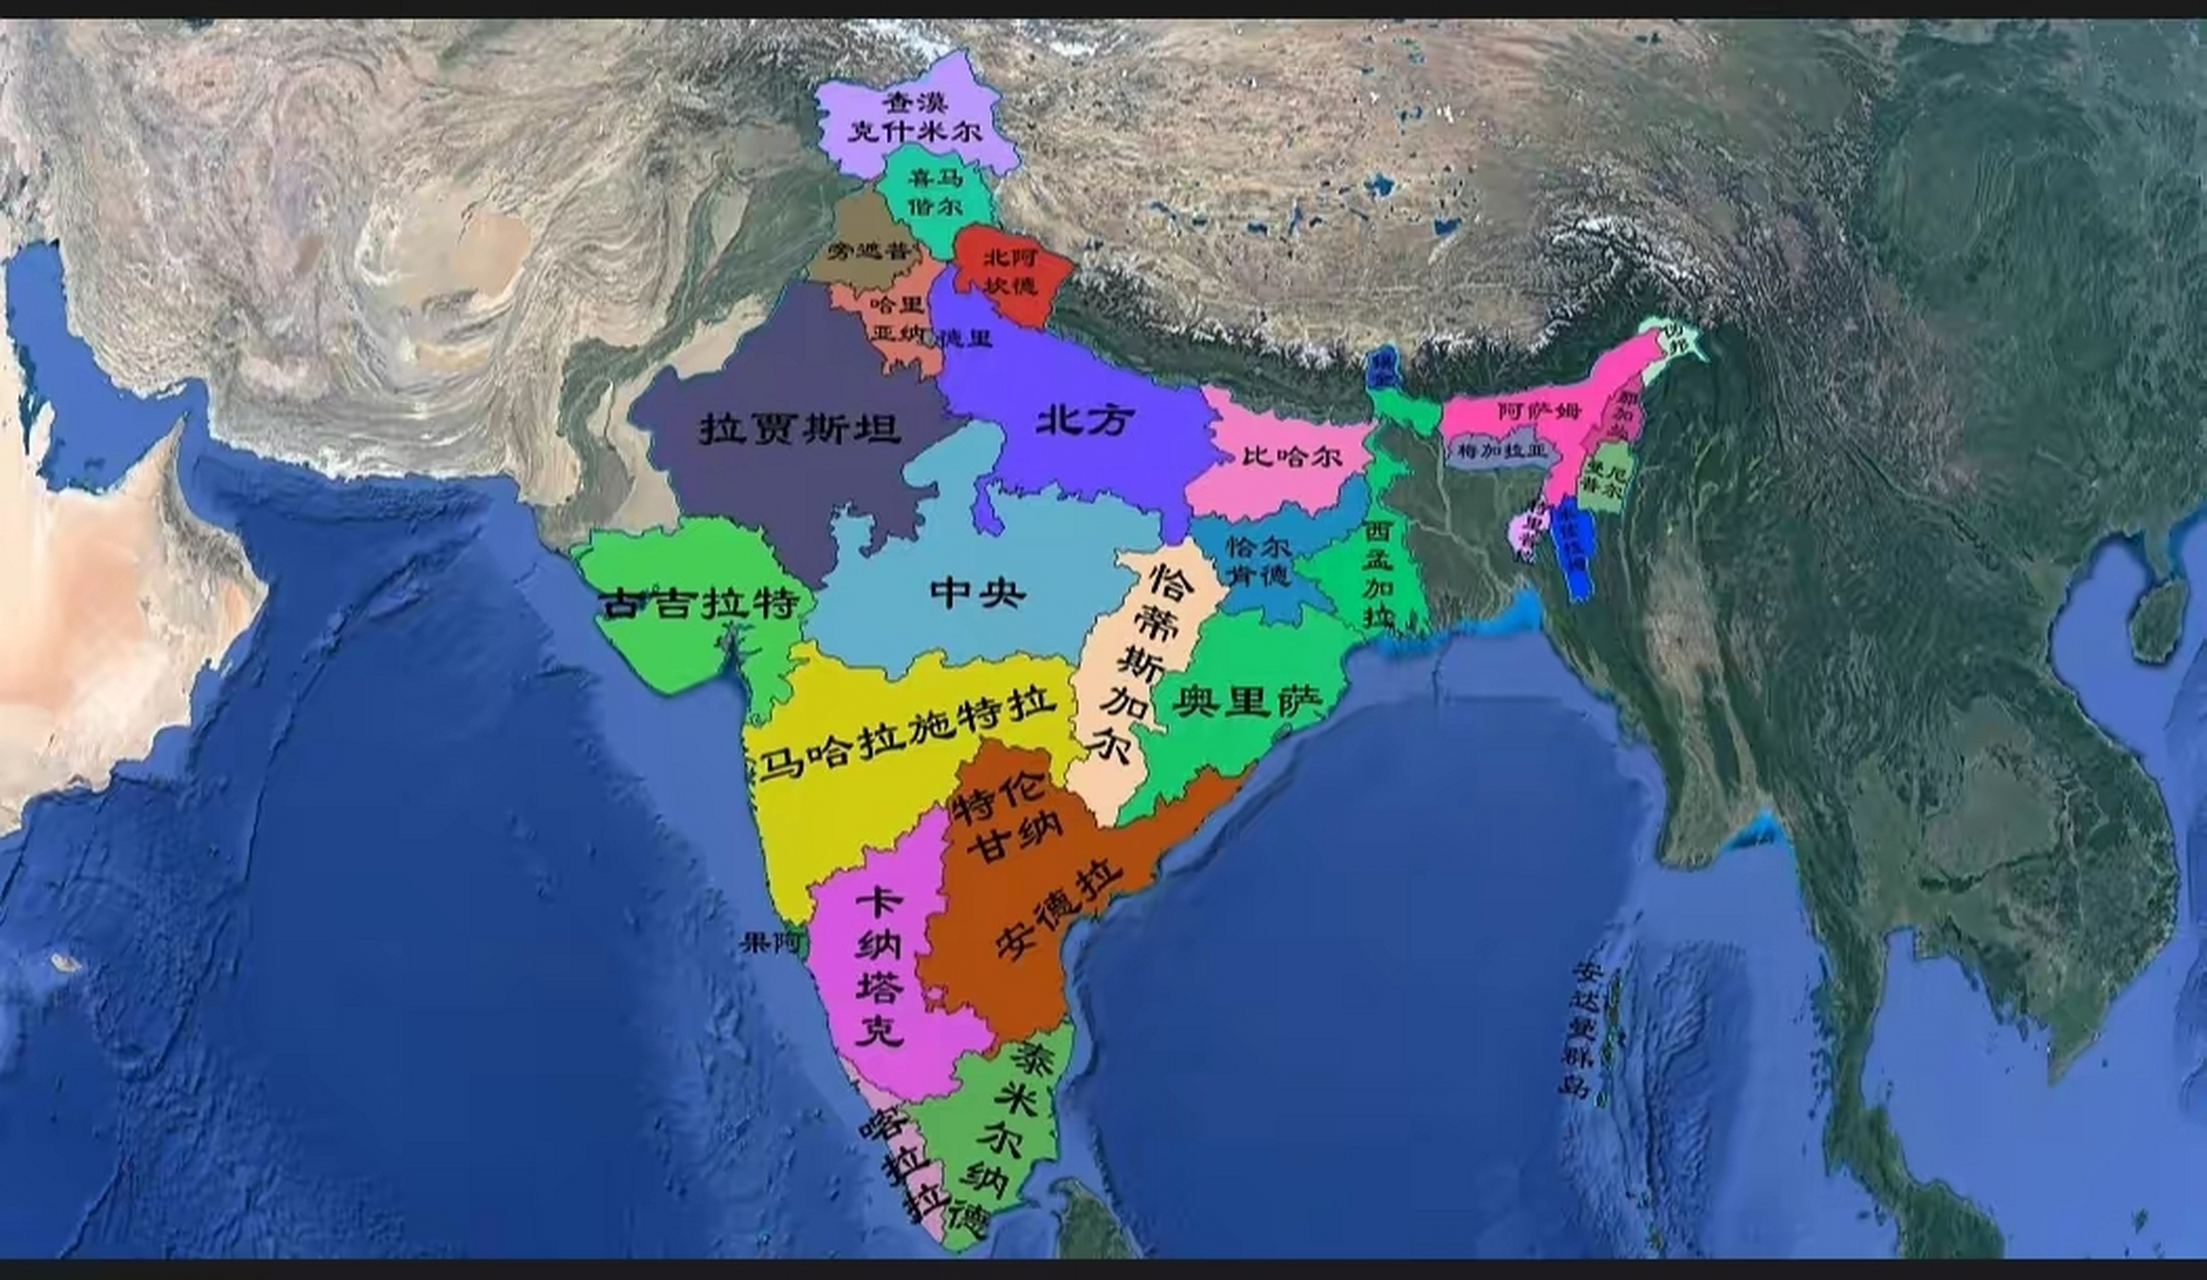 印度行政区划地图高清图片